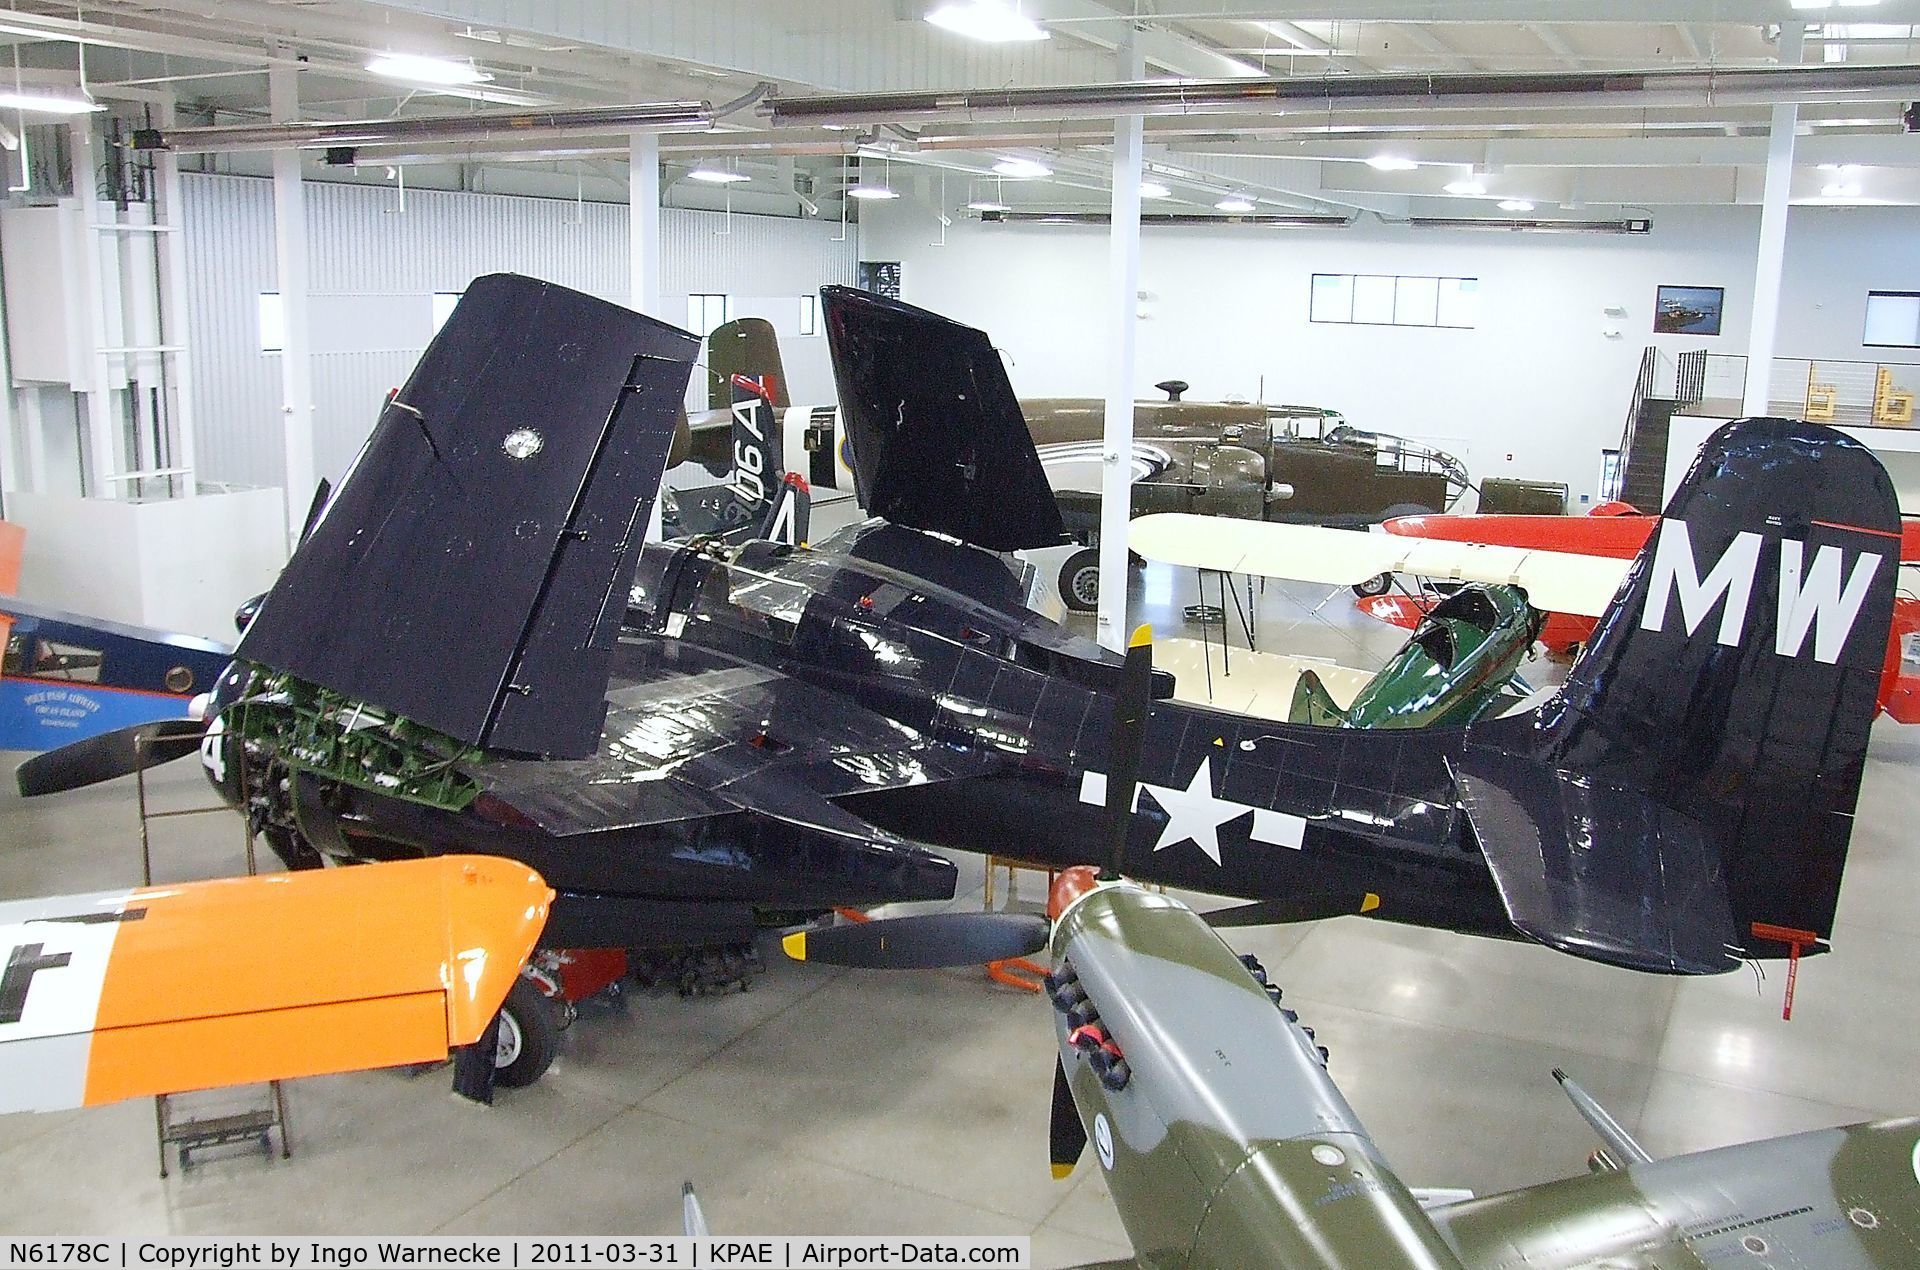 N6178C, Grumman F7F-3 Tigercat C/N C.225, Grumman F7F-3 Tigercat at the Historic Flight Foundation, Everett WA